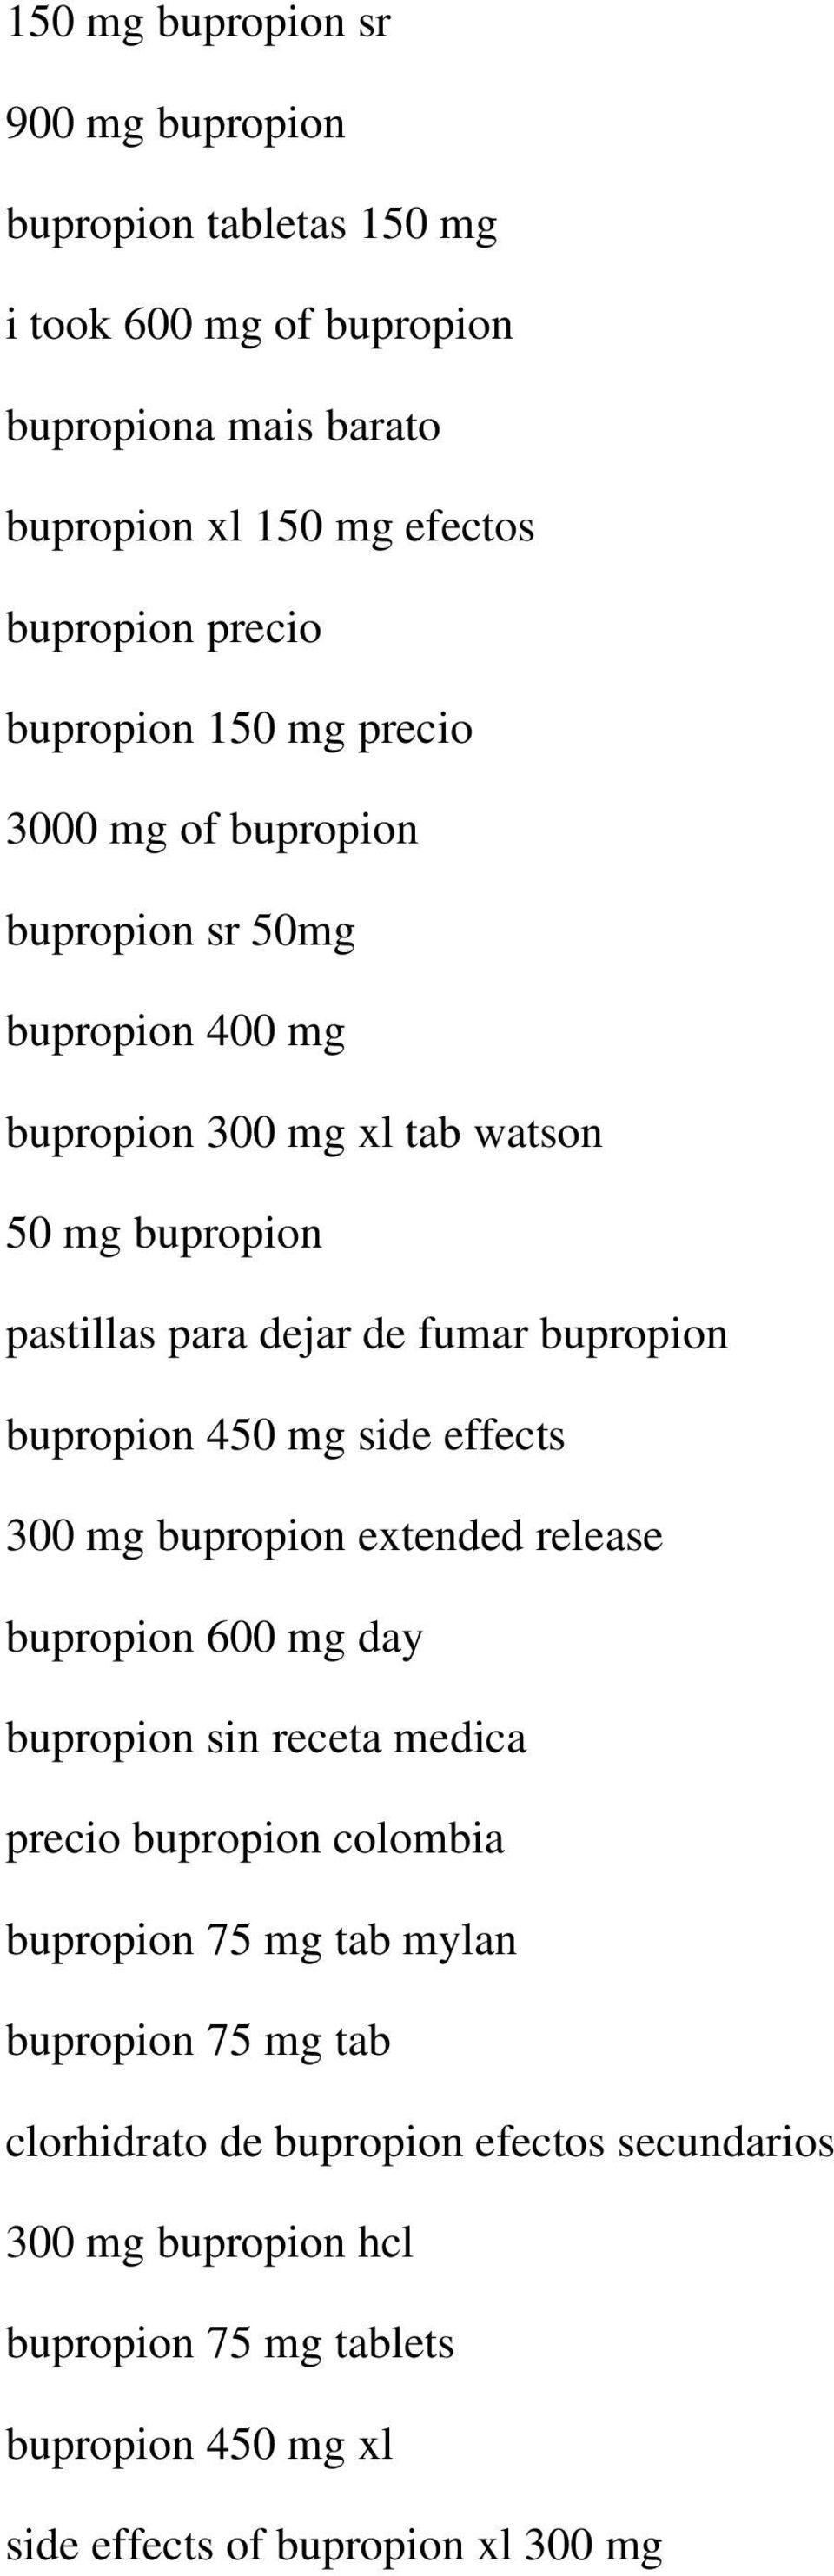 bupropion bupropion 450 mg side effects 300 mg bupropion extended release bupropion 600 mg day bupropion sin receta medica precio bupropion colombia bupropion 75